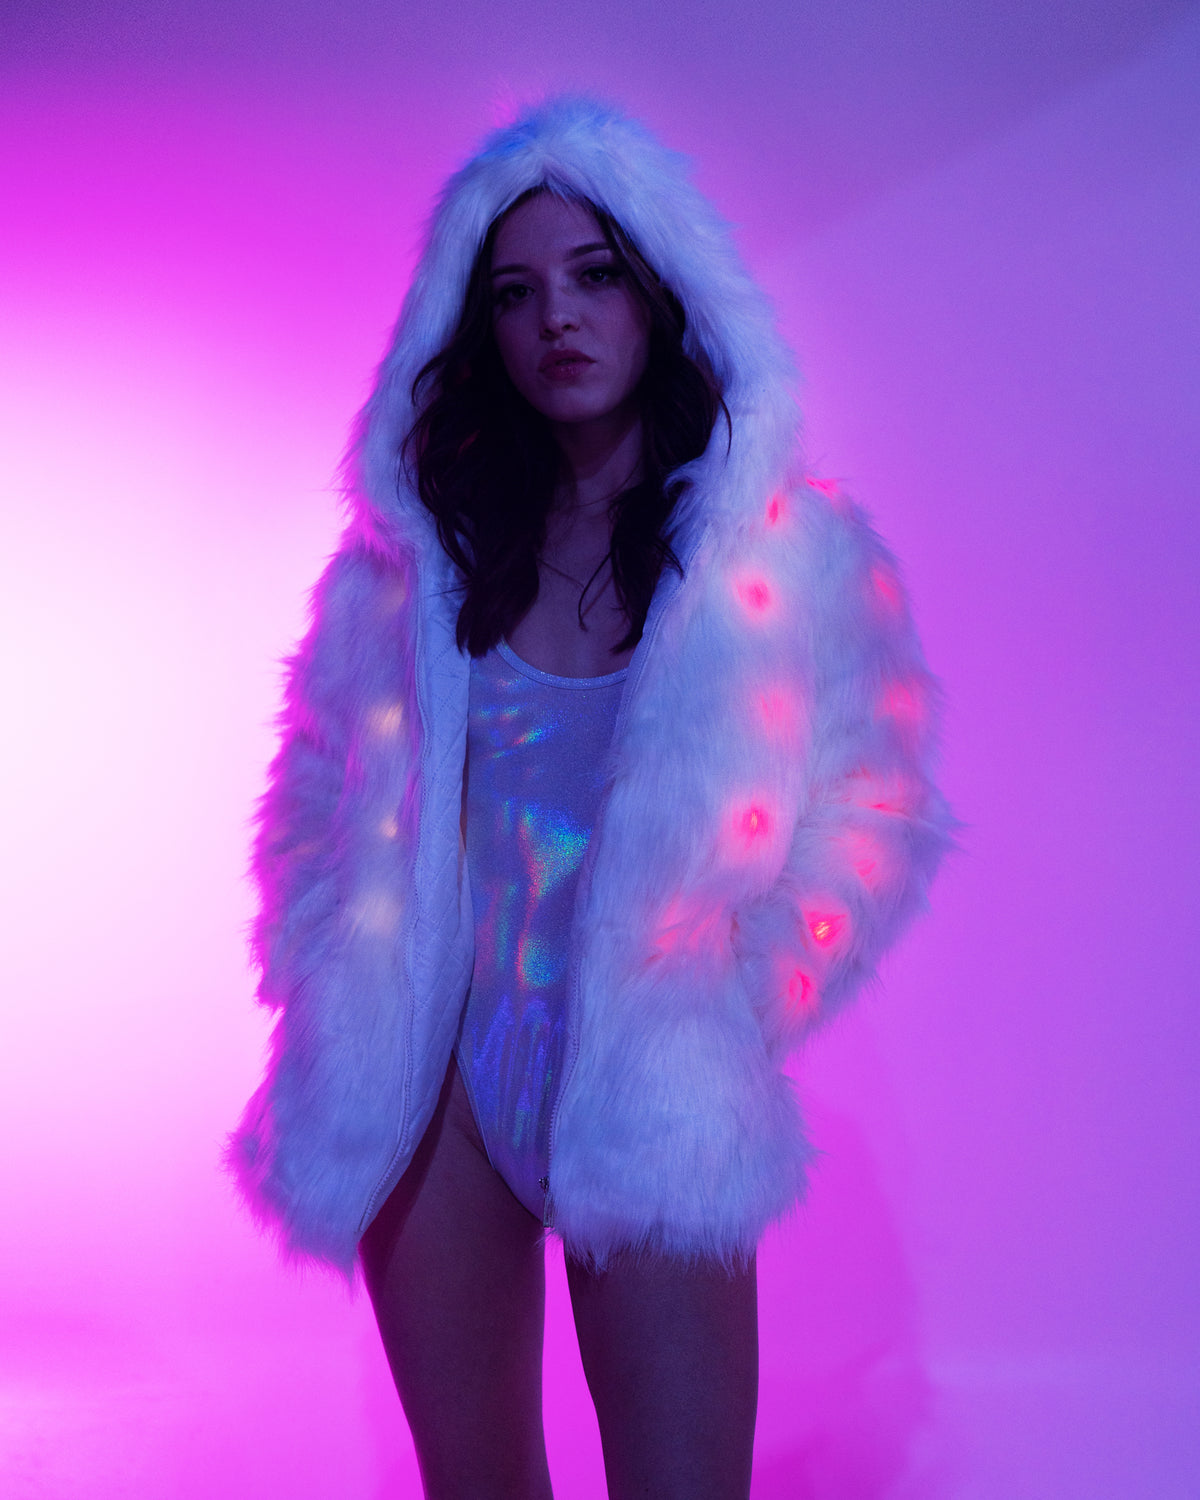 Women's Hooded Faux Fur Coats